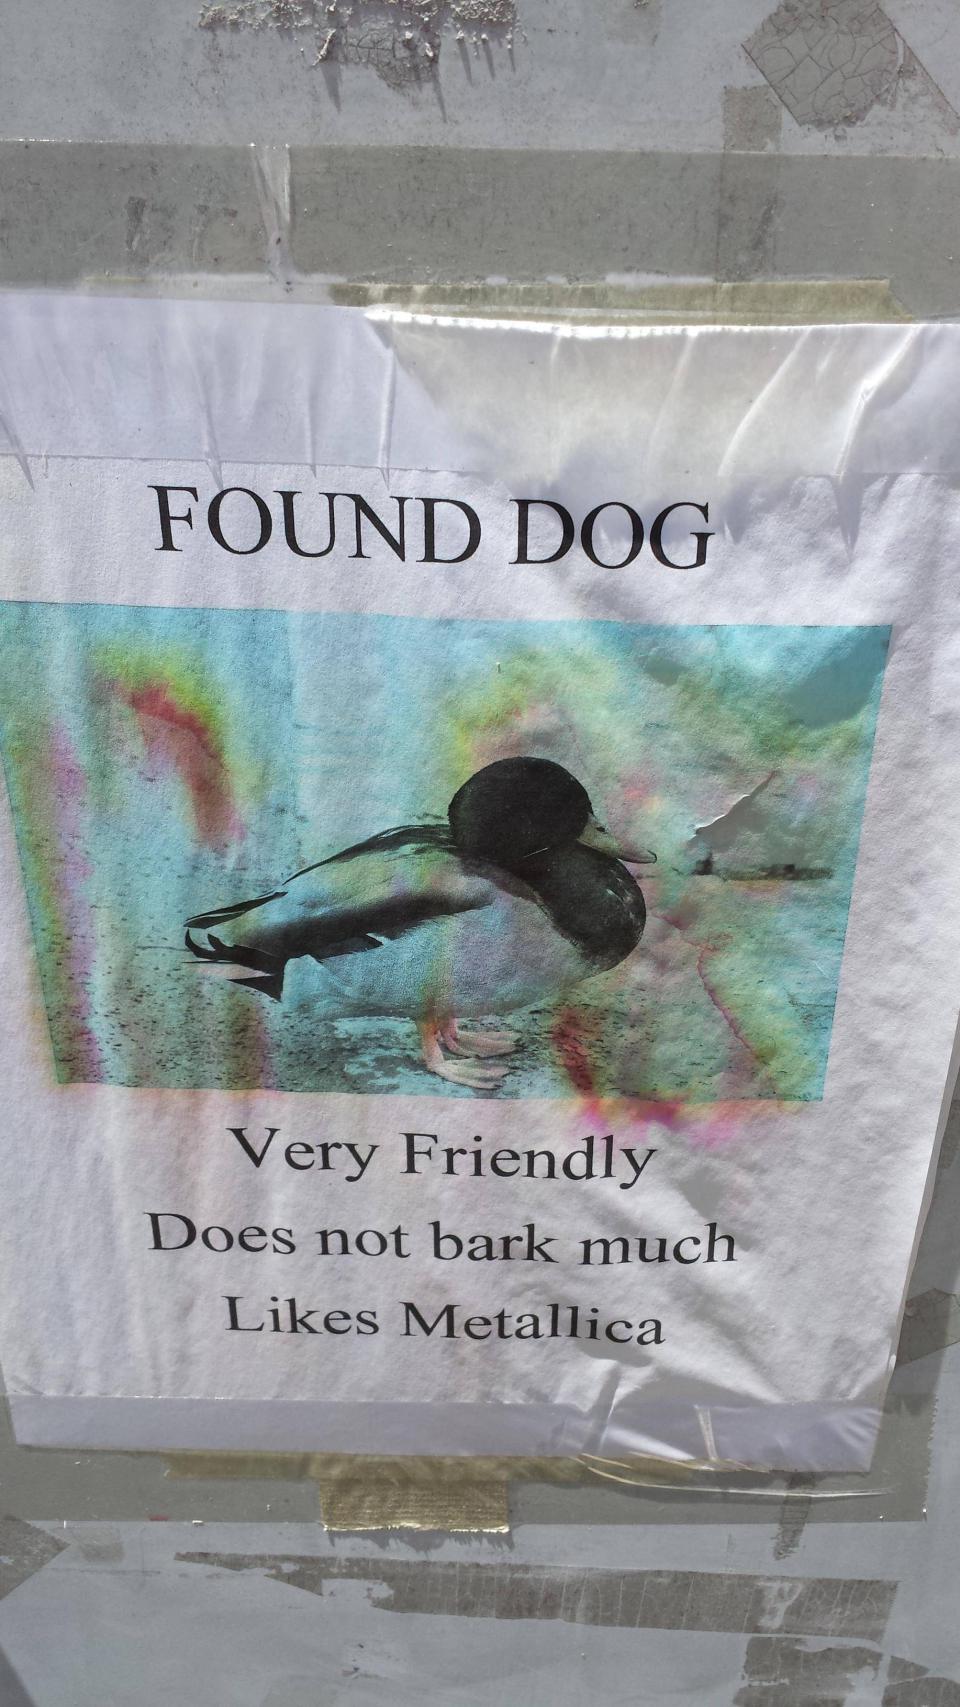 dog found duck - Found Dog Very Friendly Does not bark much Metallica